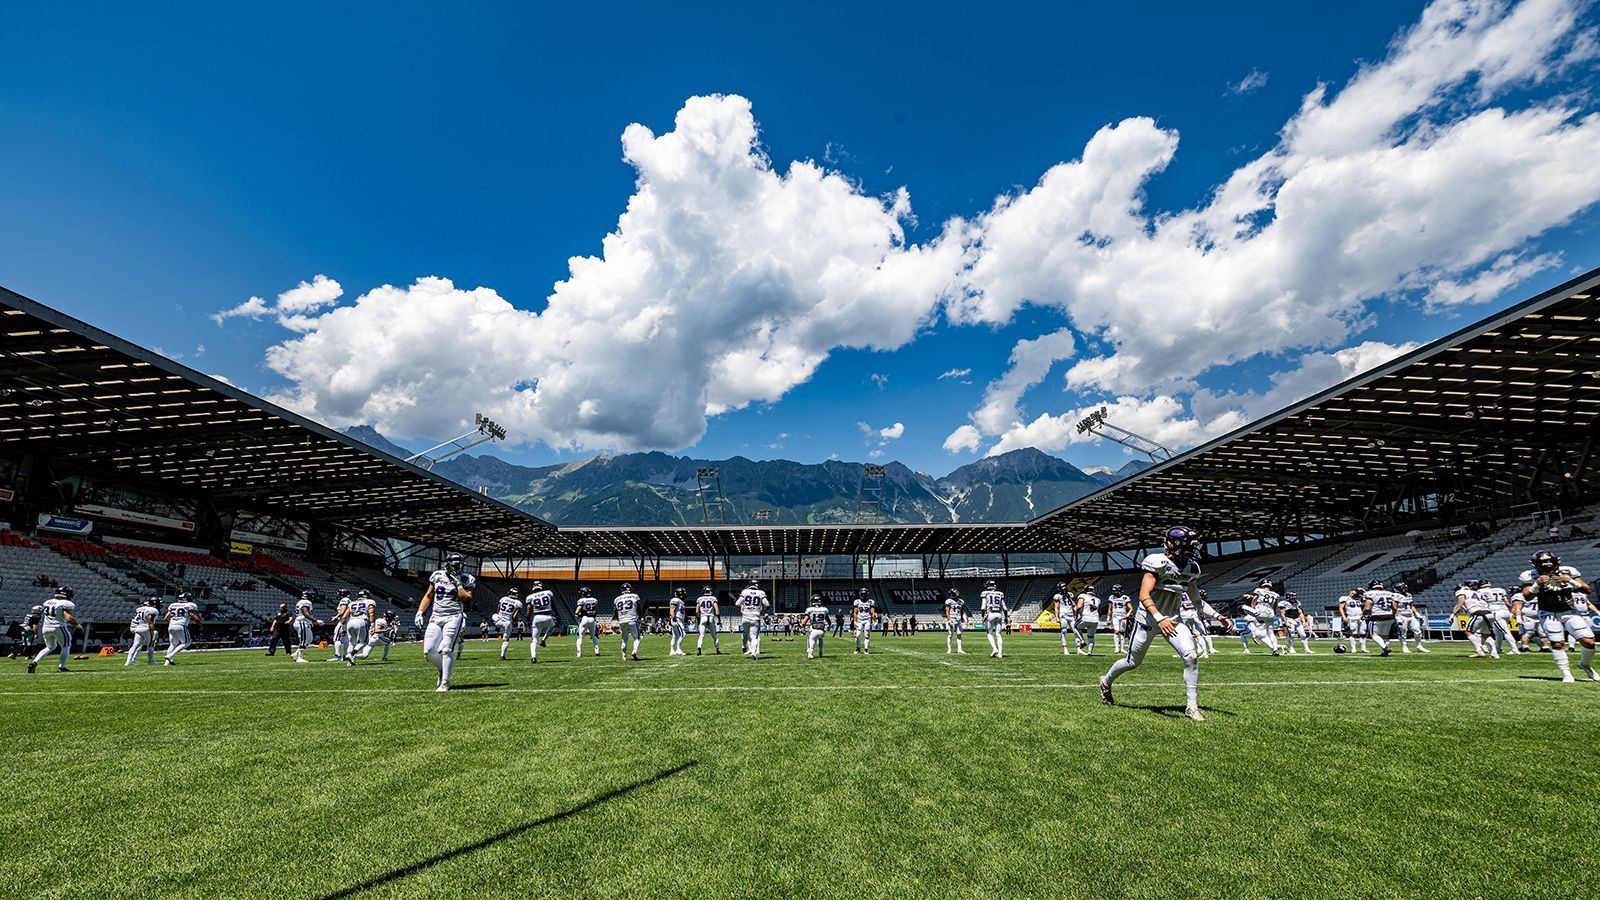 
                <strong>Raiders Tirol</strong><br>
                Die Raiders Tirol stammen aus Innsbruck. Auf dem Konto der Raiders – die schon mehrfache Namensänderungen hinter sich haben – stehen beeindruckende drei Eurobowl-Siege und acht österreichische Meistertitel. Nun wollen die Innsbrucker auch in der ELF an ihre Erfolge anknüpfen. Dafür soll es zahlreiche Siege daheim im Tivoli Stadion geben. Dort spielt auch der Fußballklub FC Wacker Innsbruck. Über 15.000 Plätze gibt es.
              